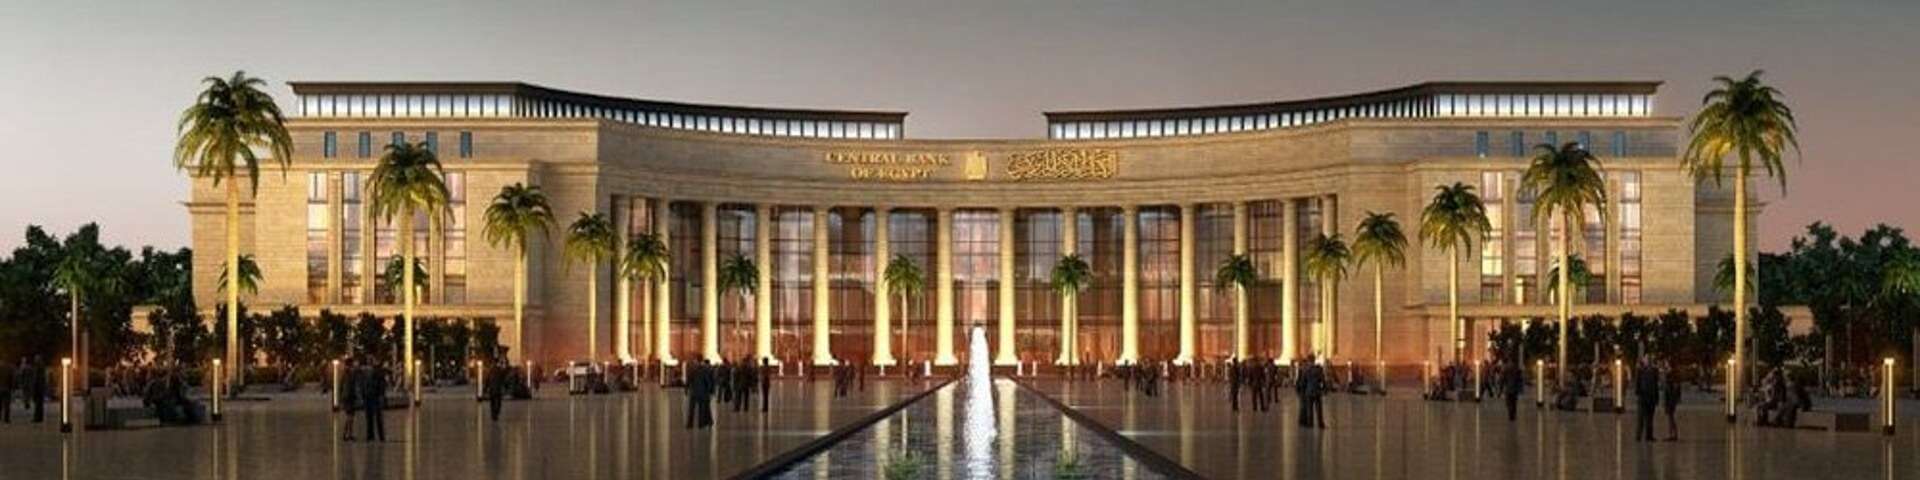 Central Bank of Egypt BIM Modeling